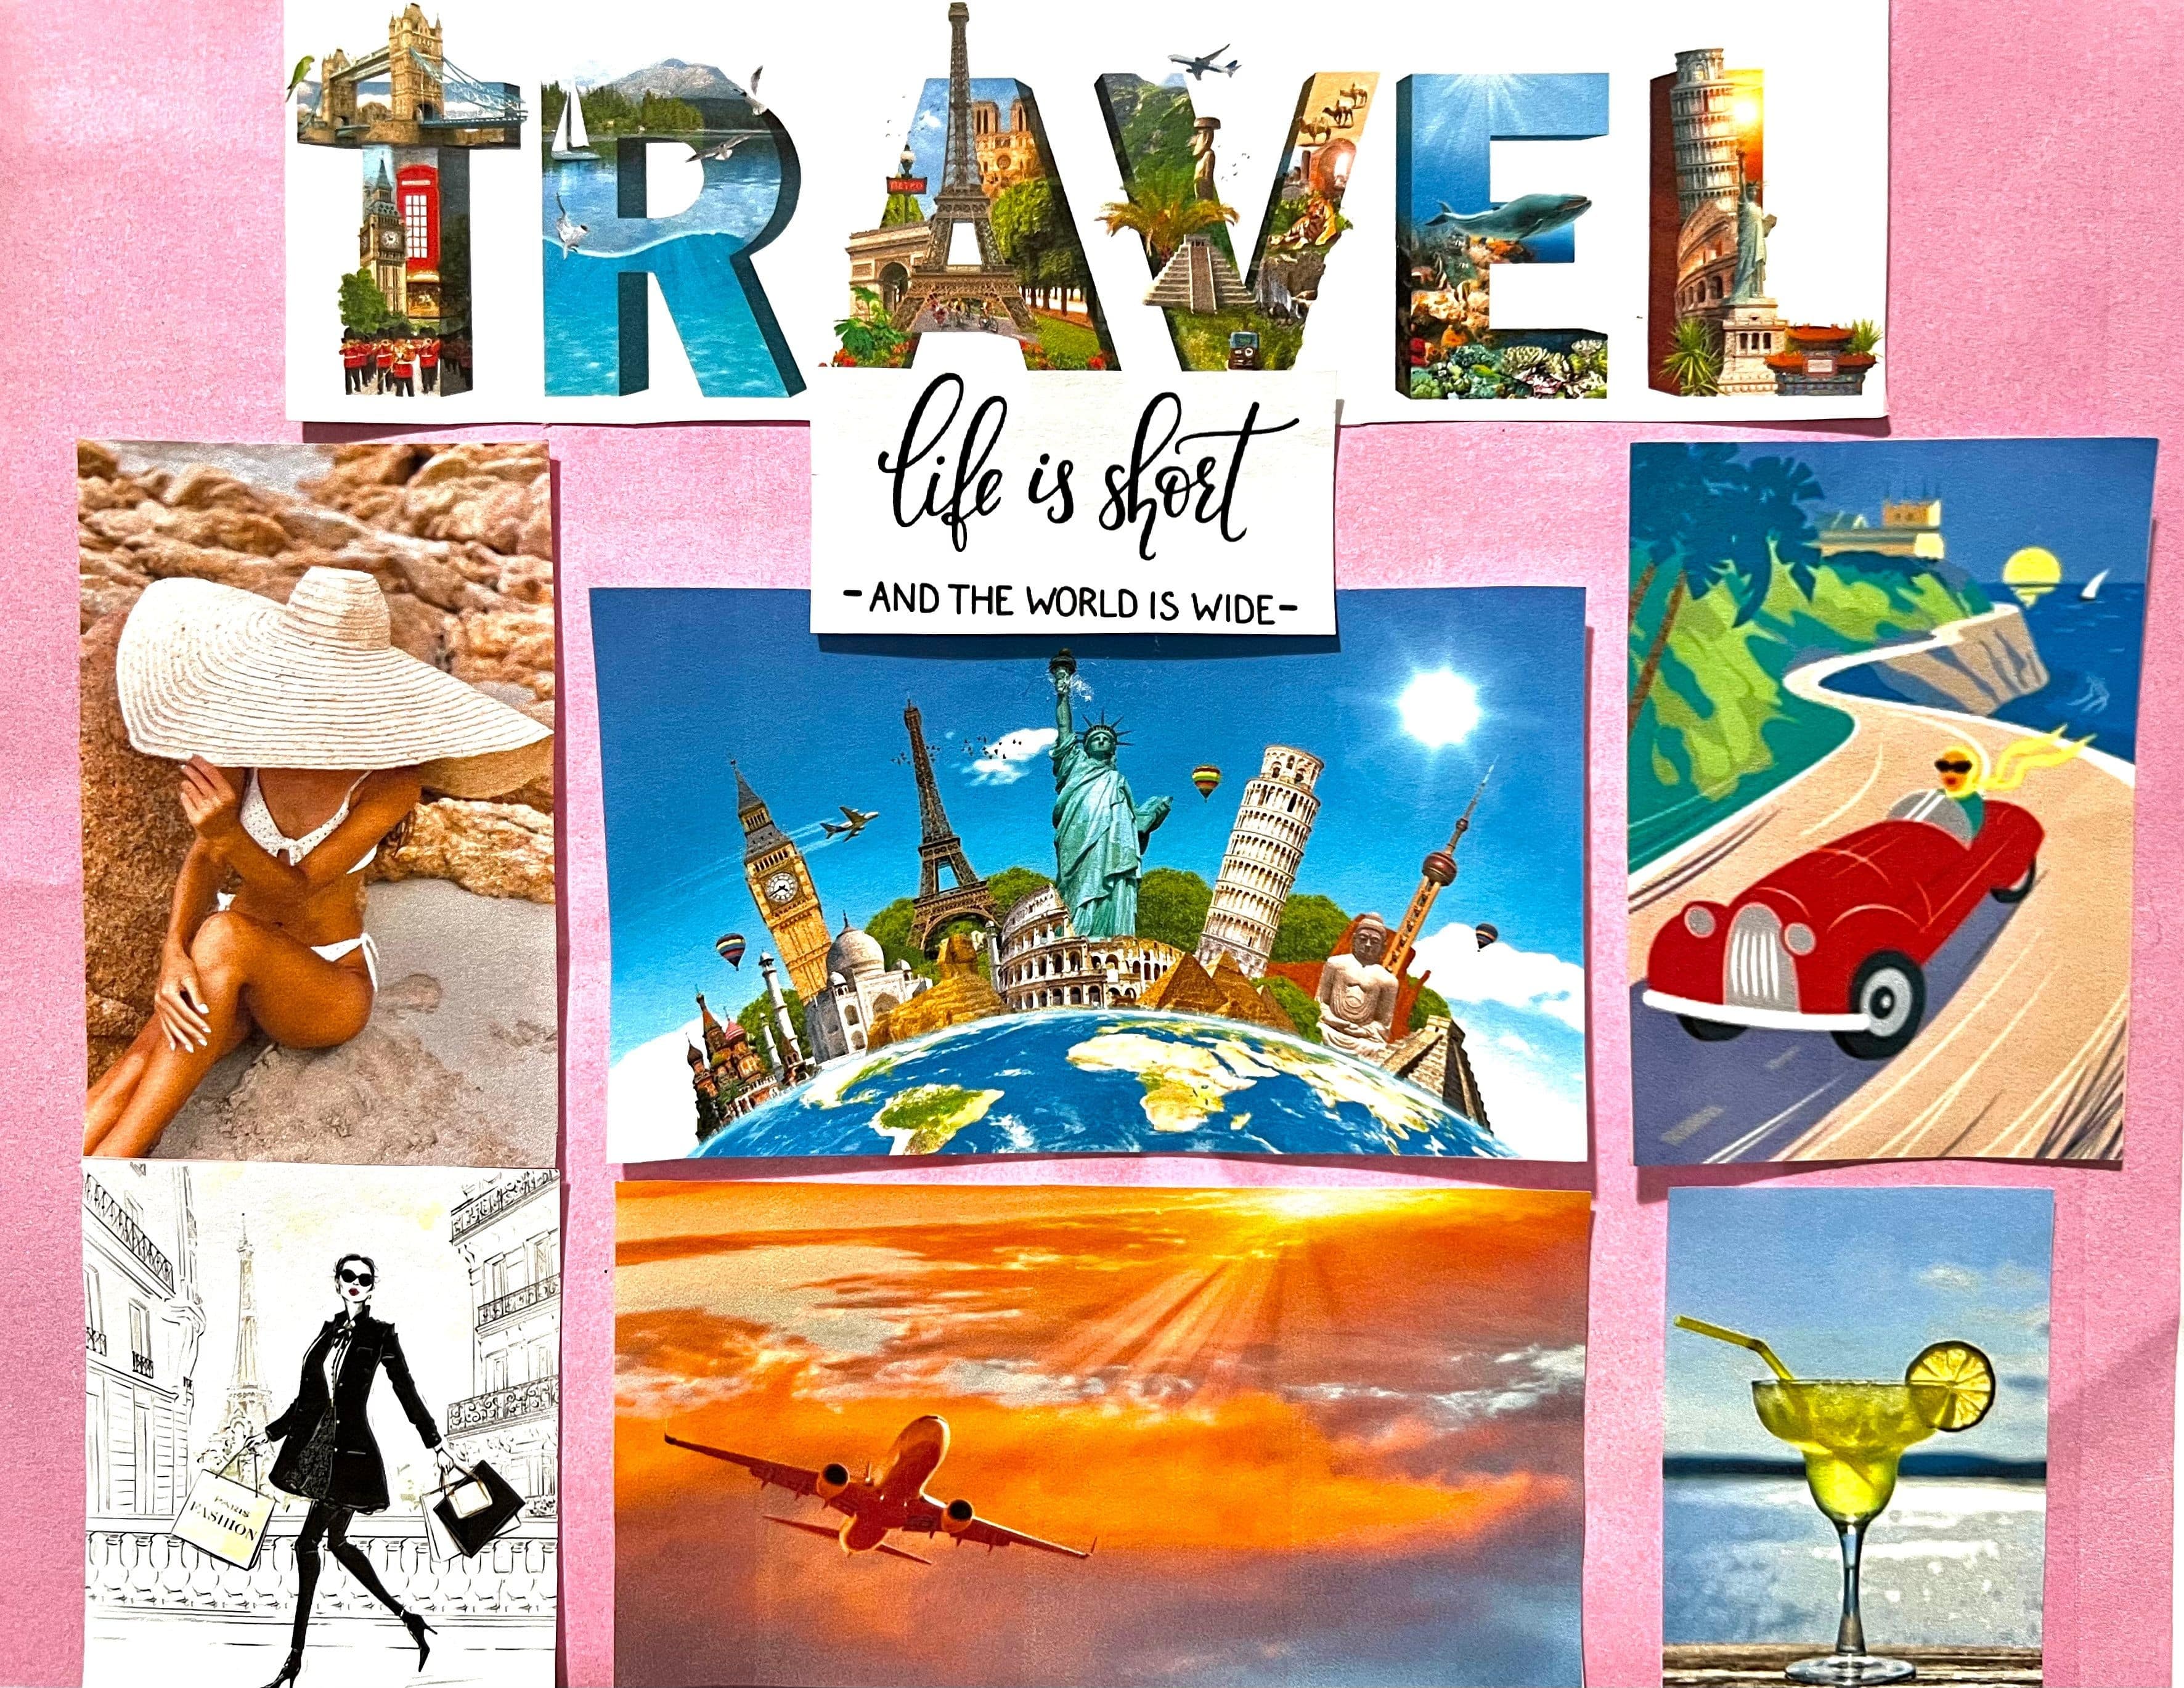 Melanie Gendron travel, tourism, airplane flights, cocktails, spiritours, Paris, hat collection, adventures, roads tour, world tours, 